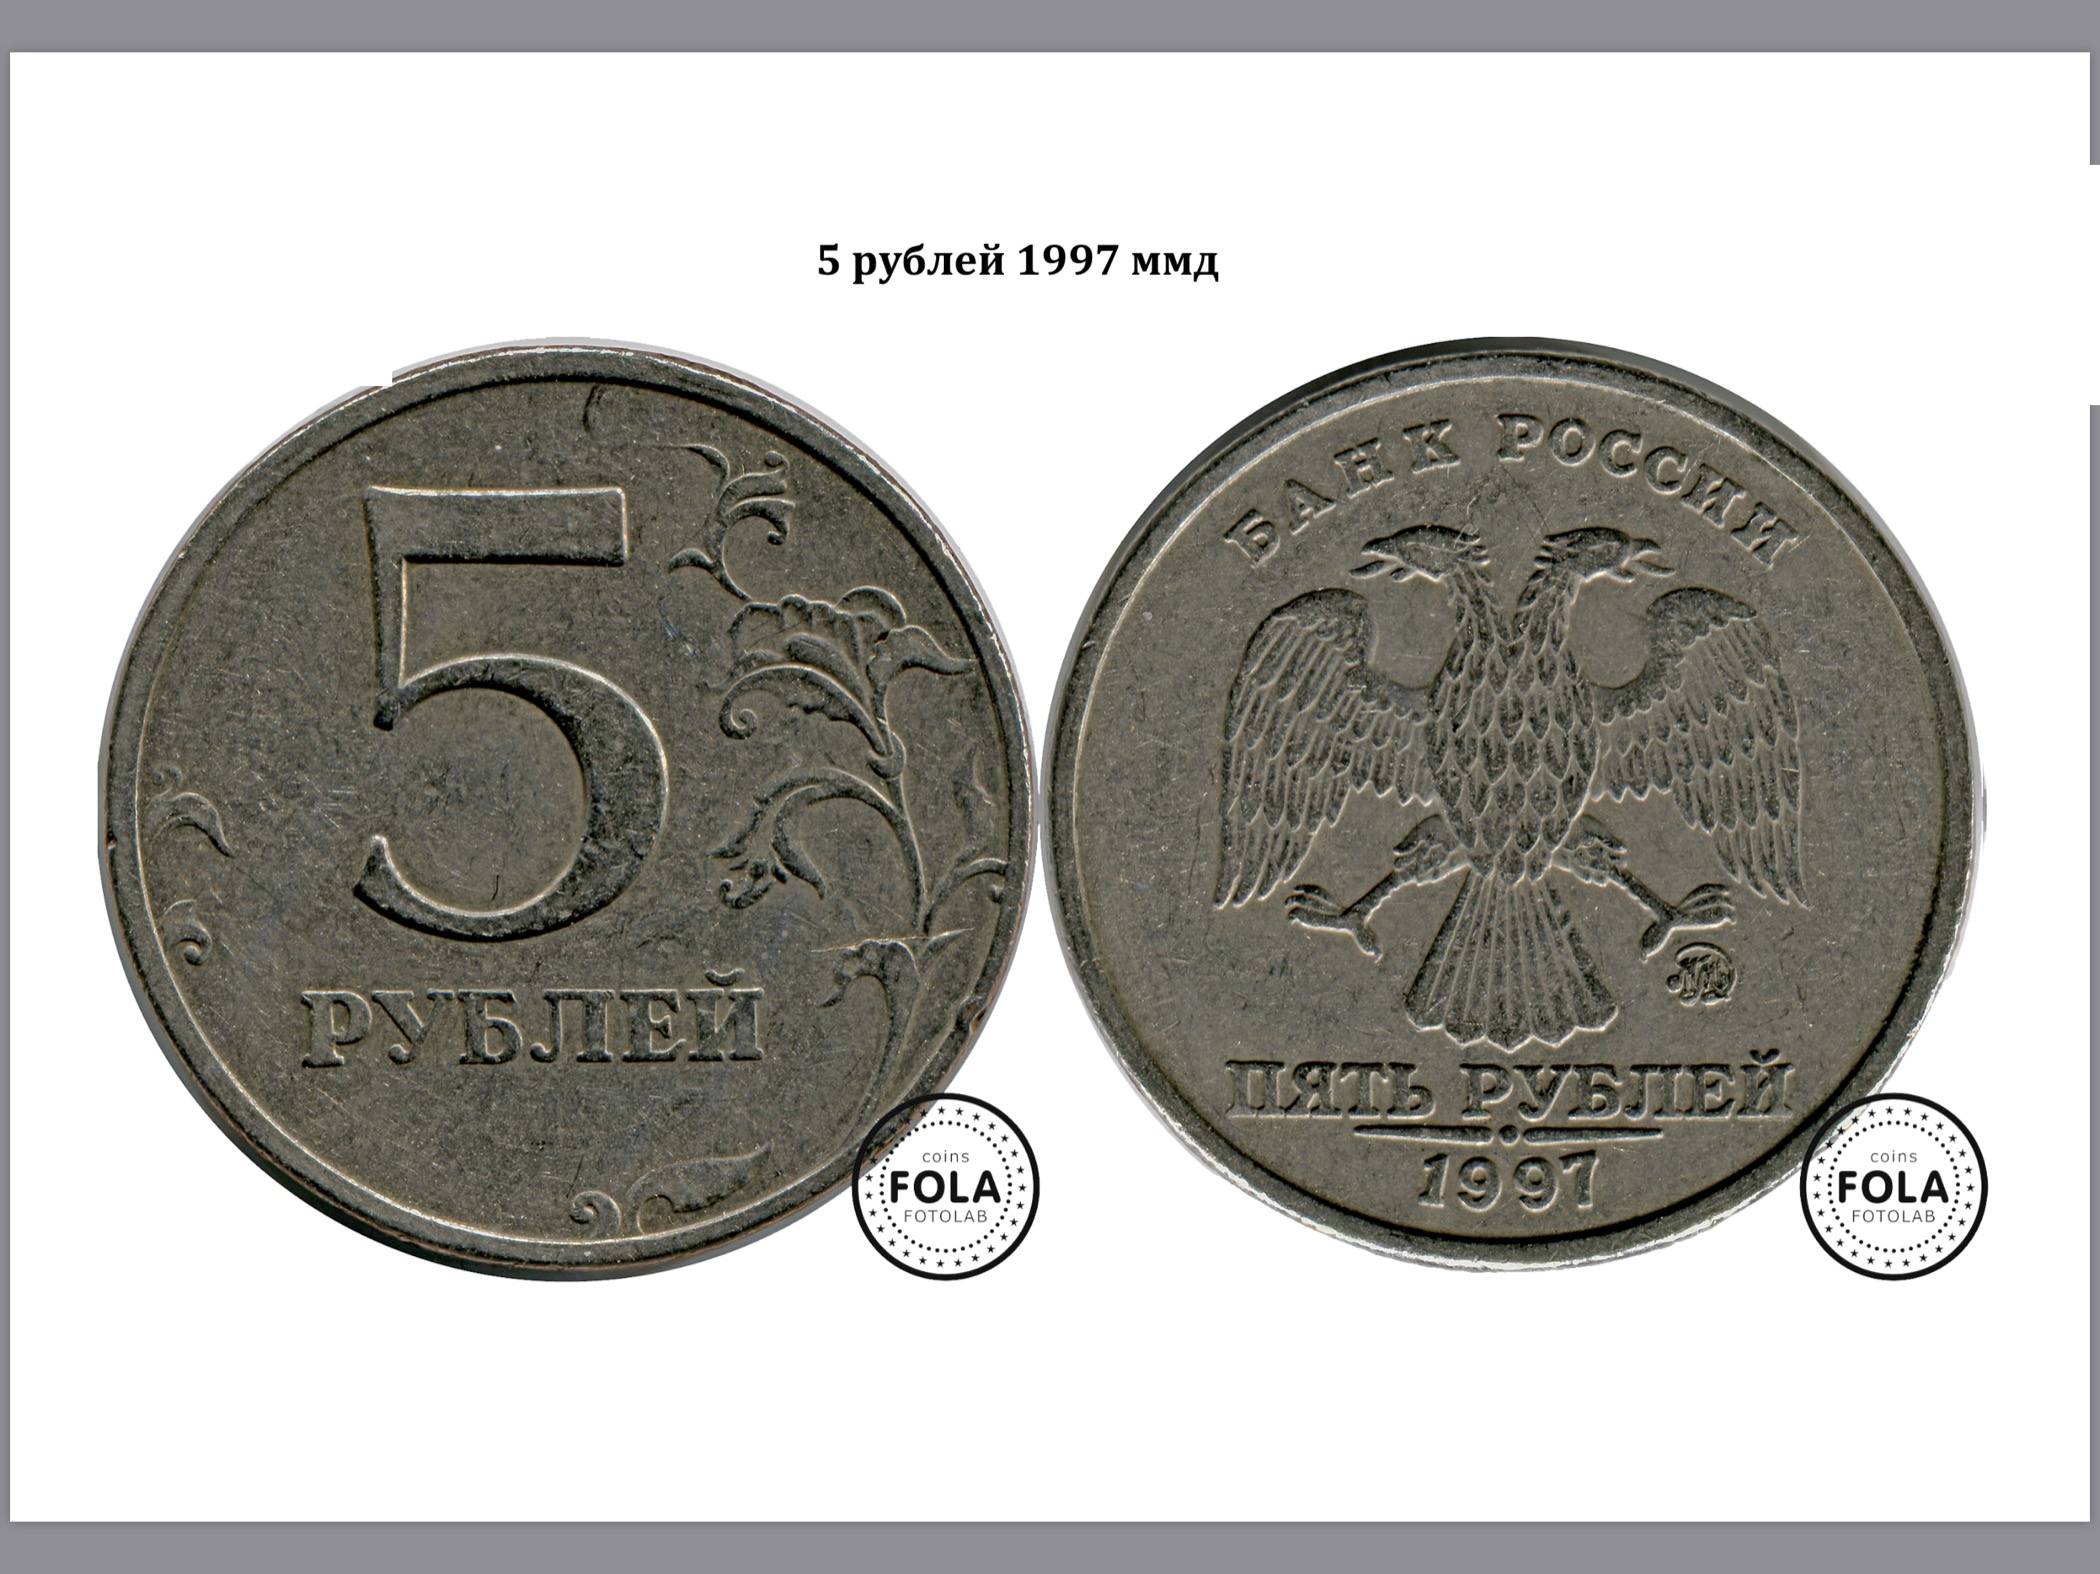 Продать монеты 5 рублей. Монета 5 рублей 1997 ММД. 5 Рублей 1997 ММД. Редкие монеты 5 рублей 1997 ММД. 5 Рублей 1997 ММД Медно-алюминиевая.